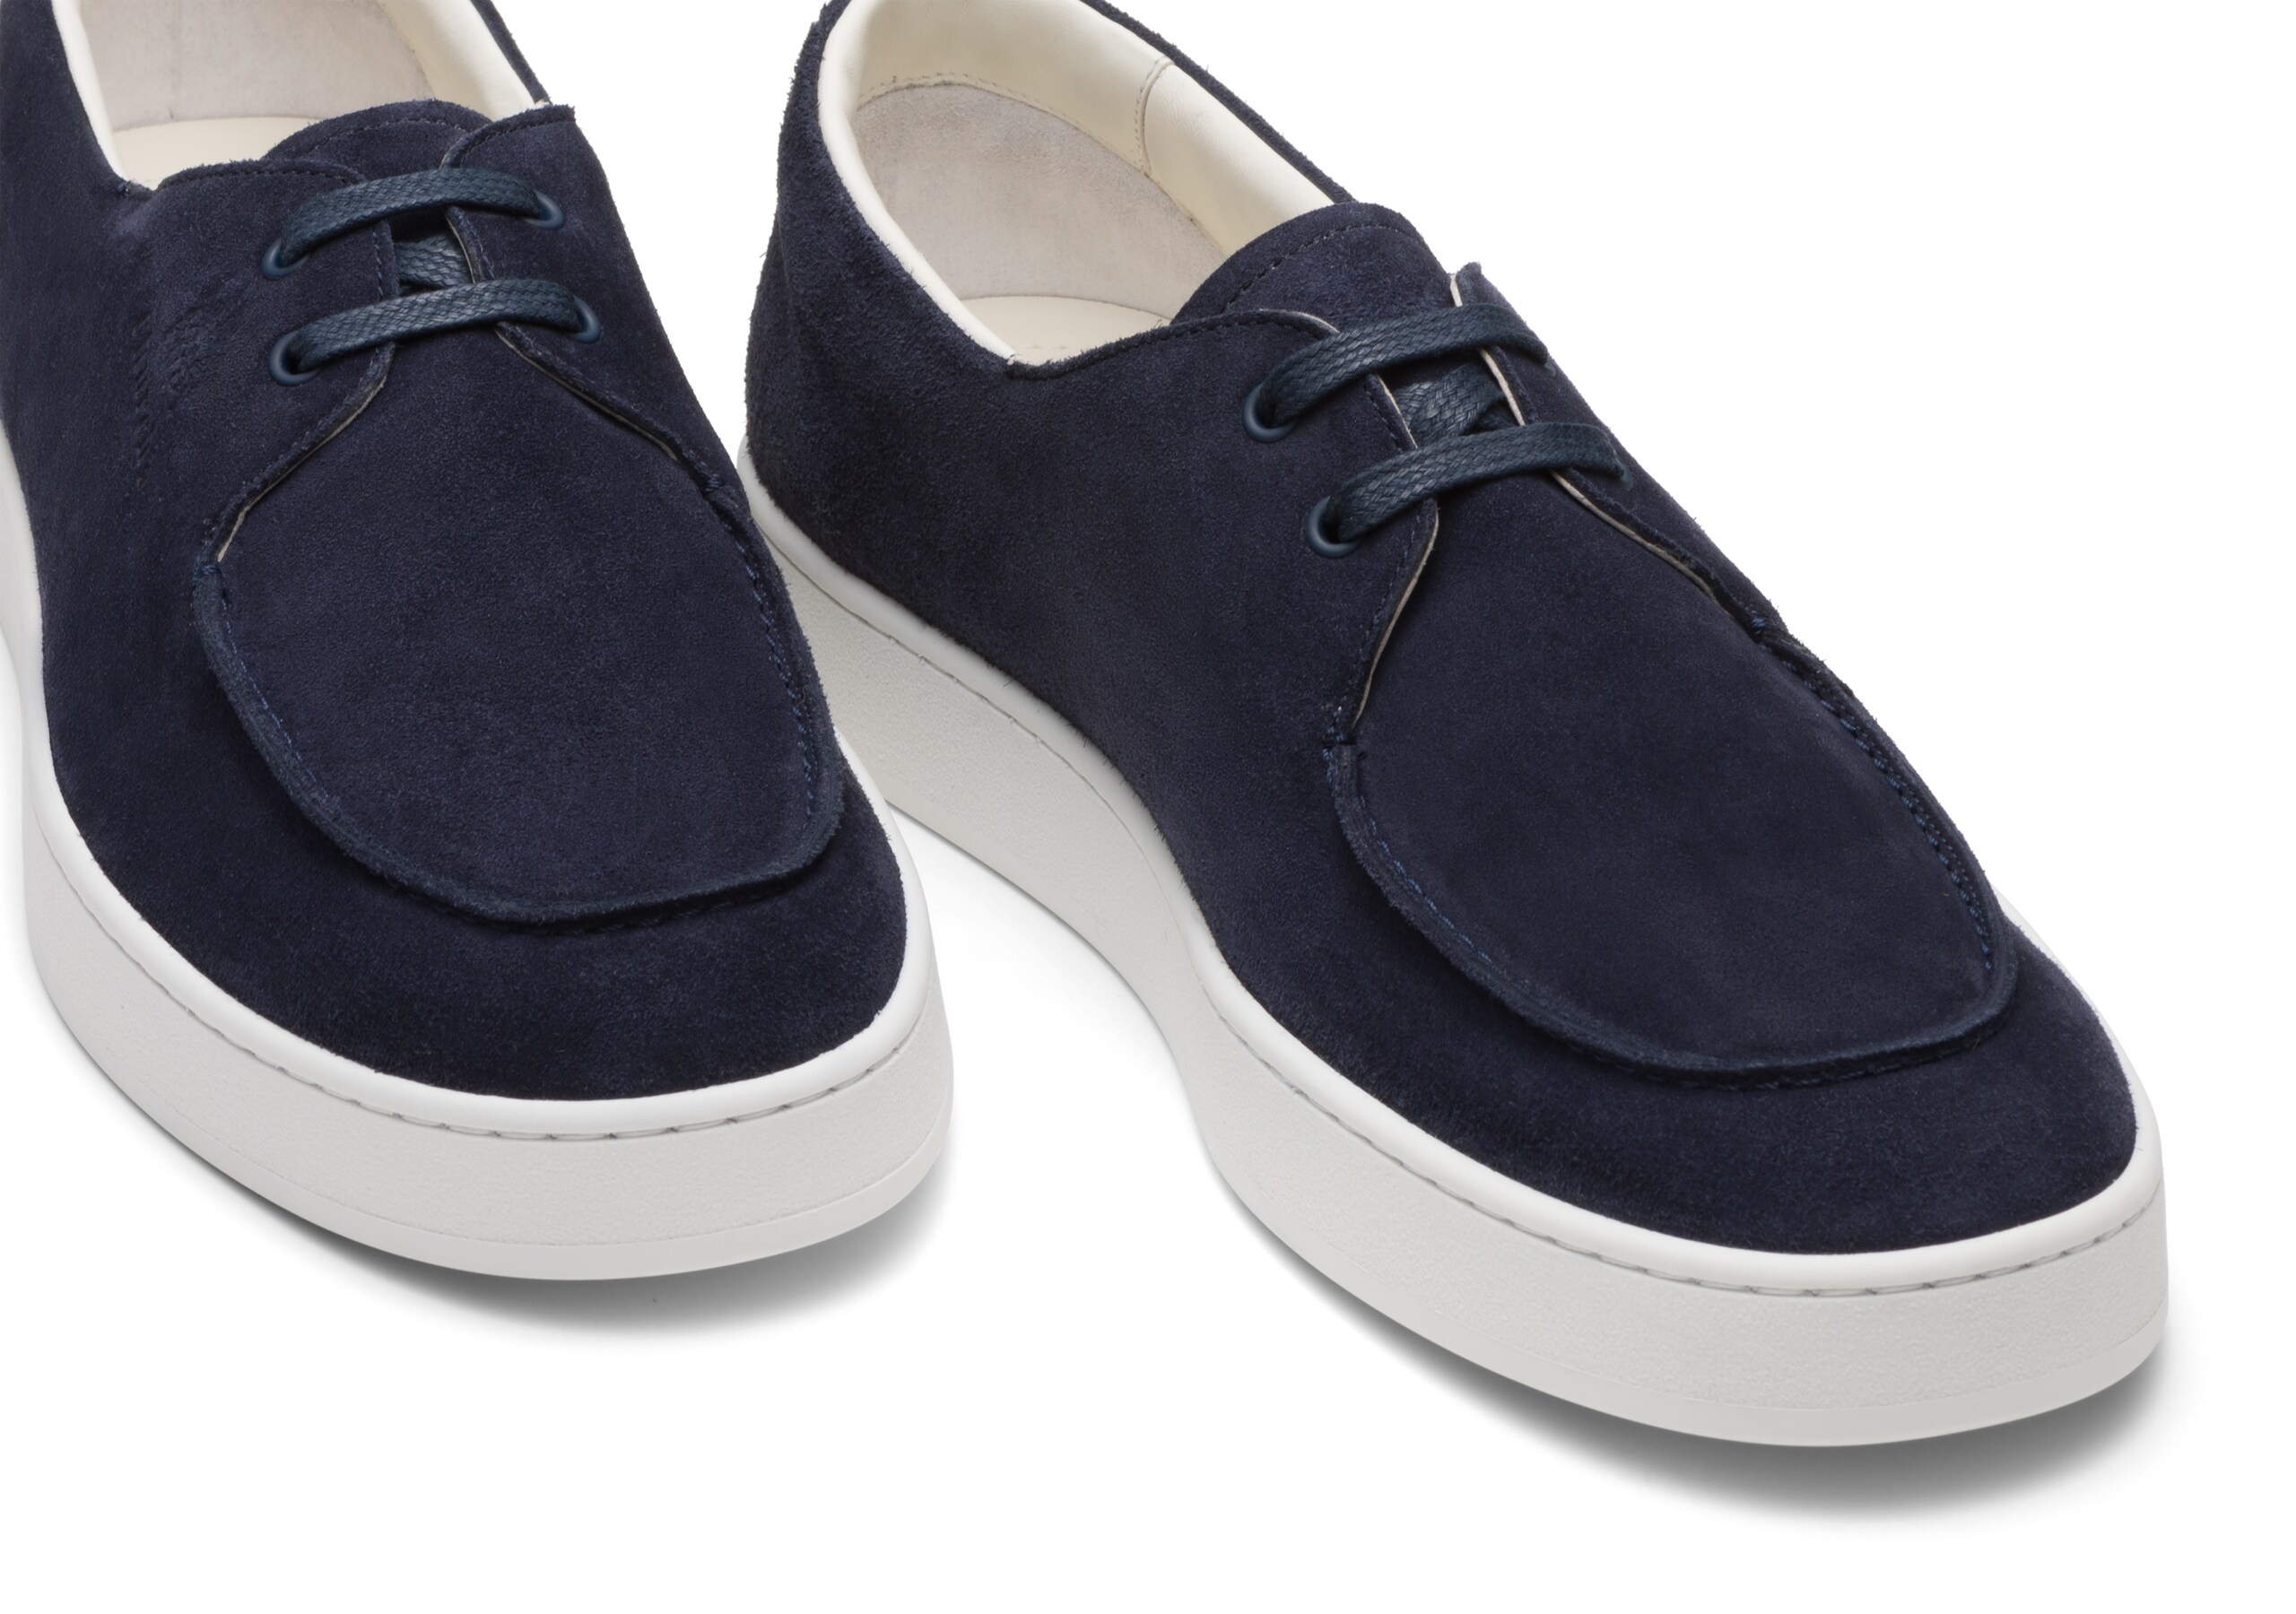 Longsight
Soft Suede Sneaker Blue - 4